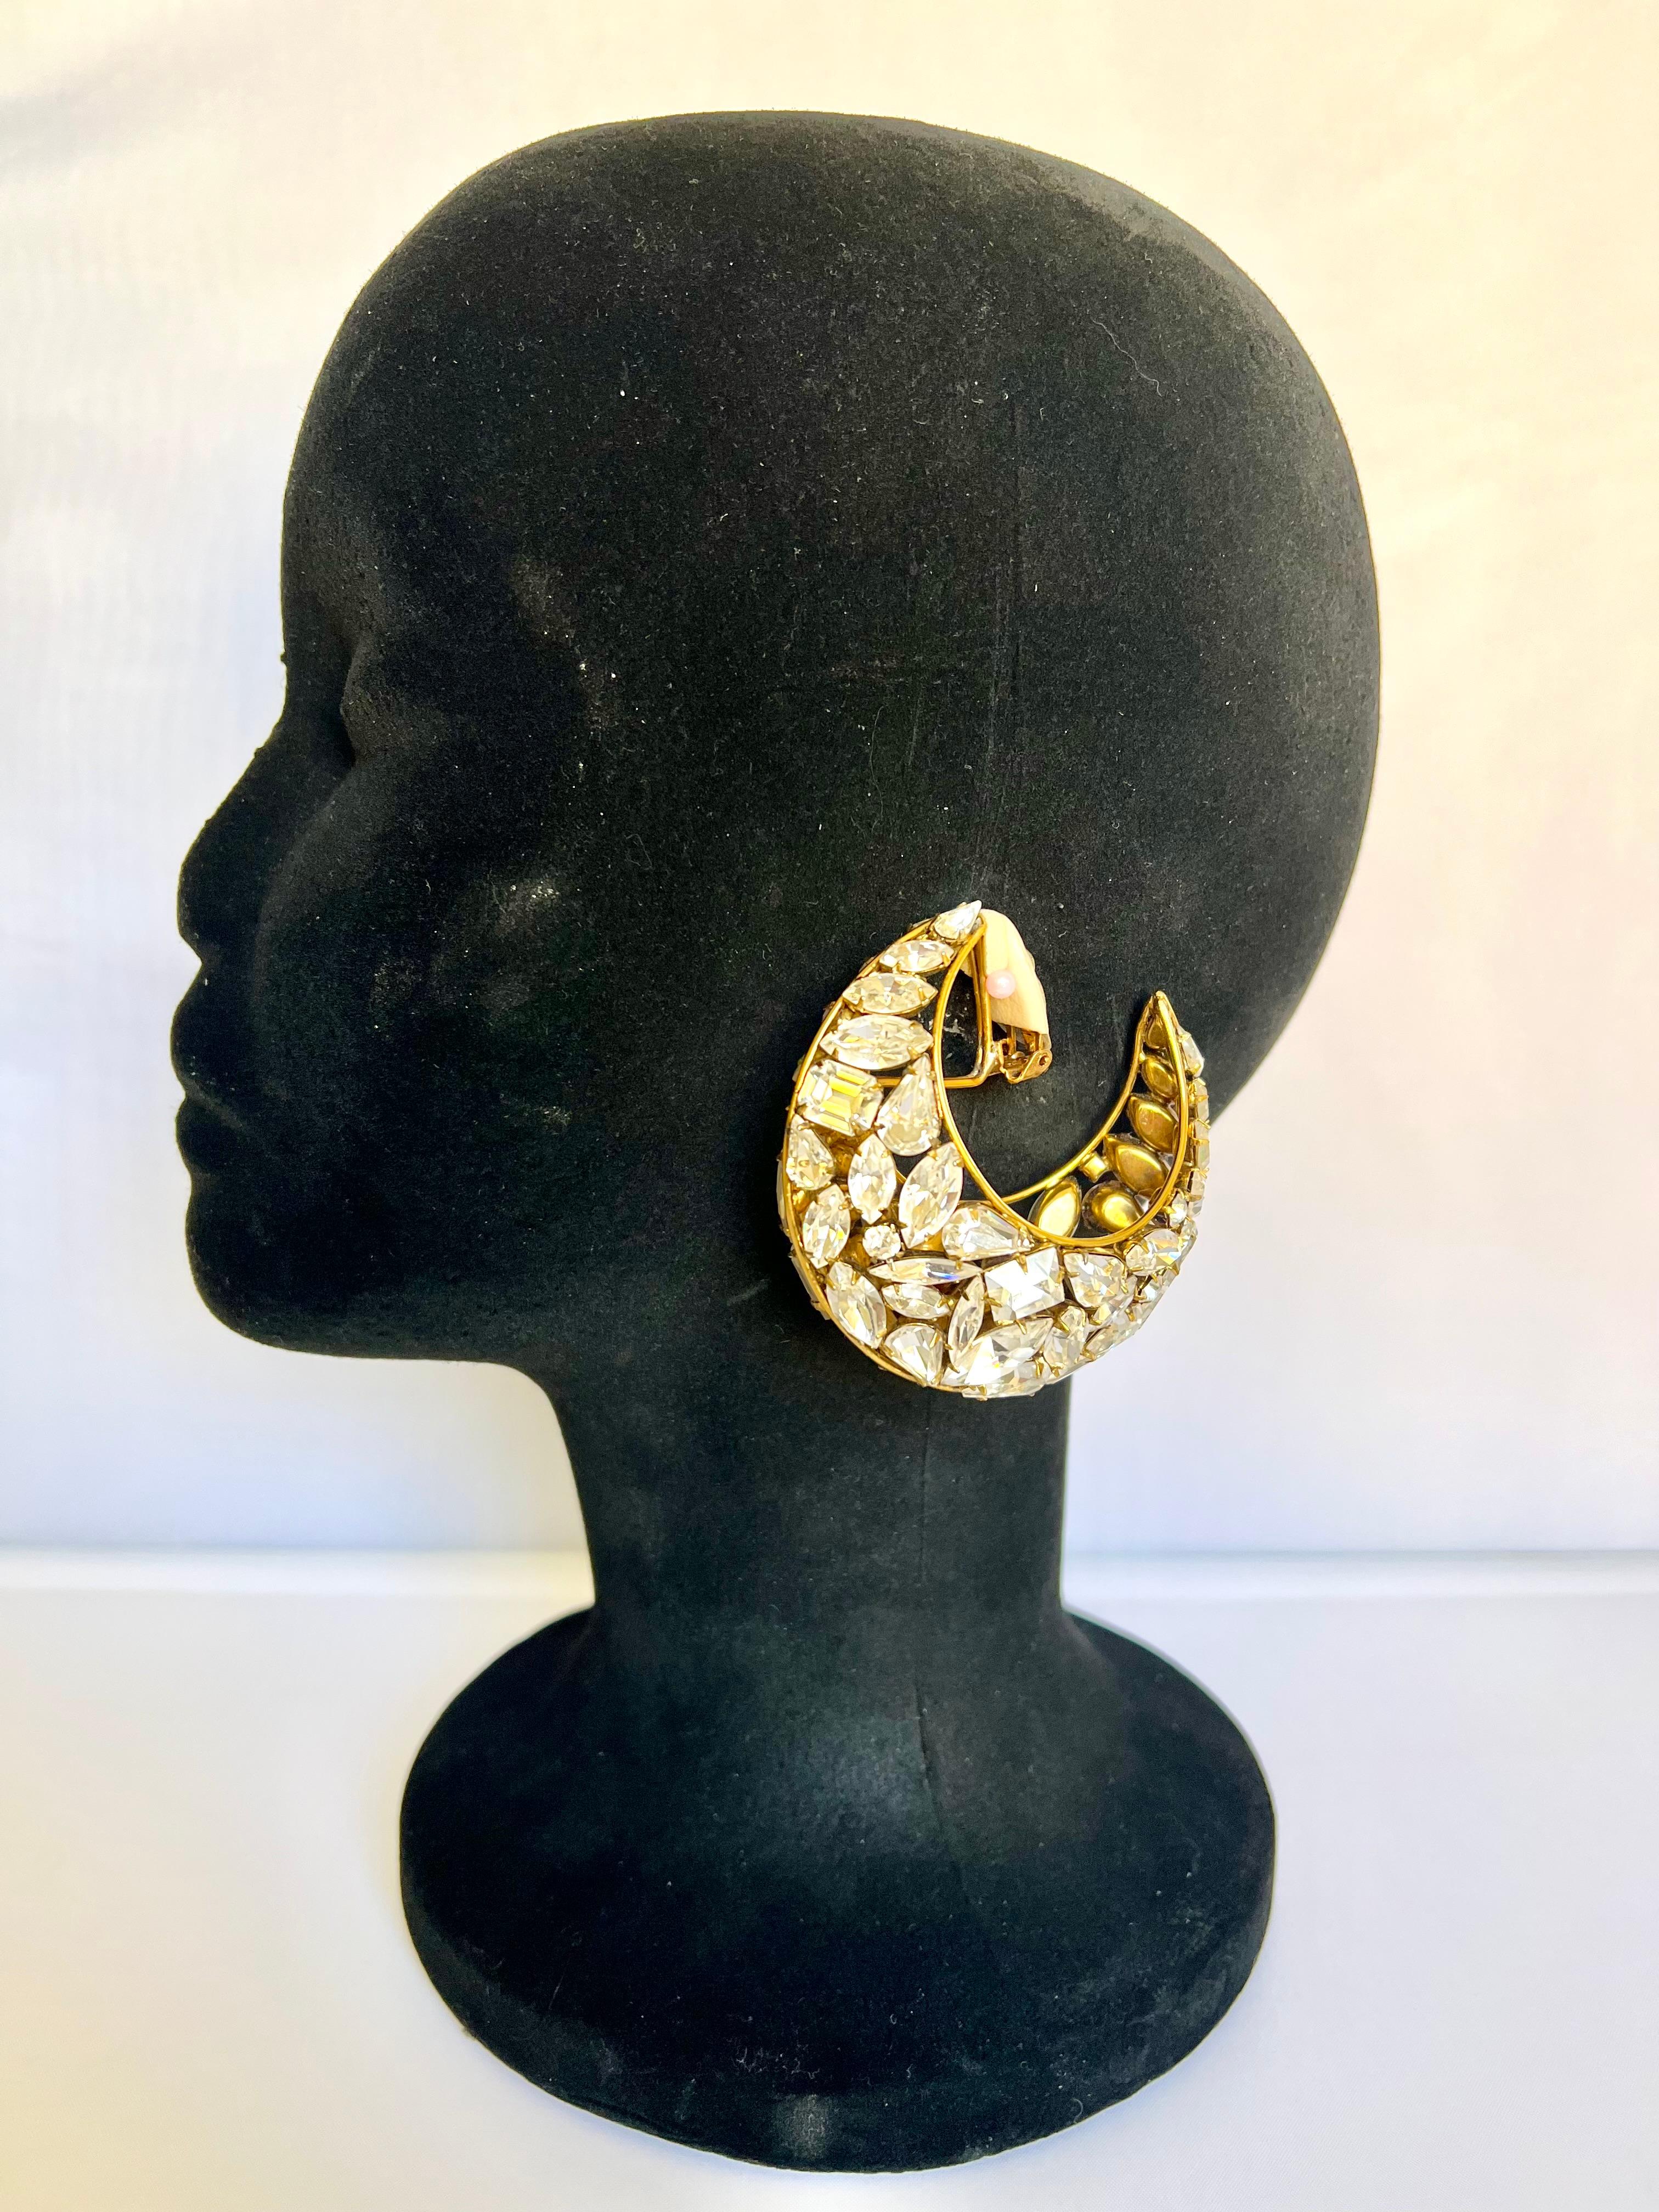 Women's Vintage Diamante Half Moon Earring by Iradj Moini for Oscar de La Renta